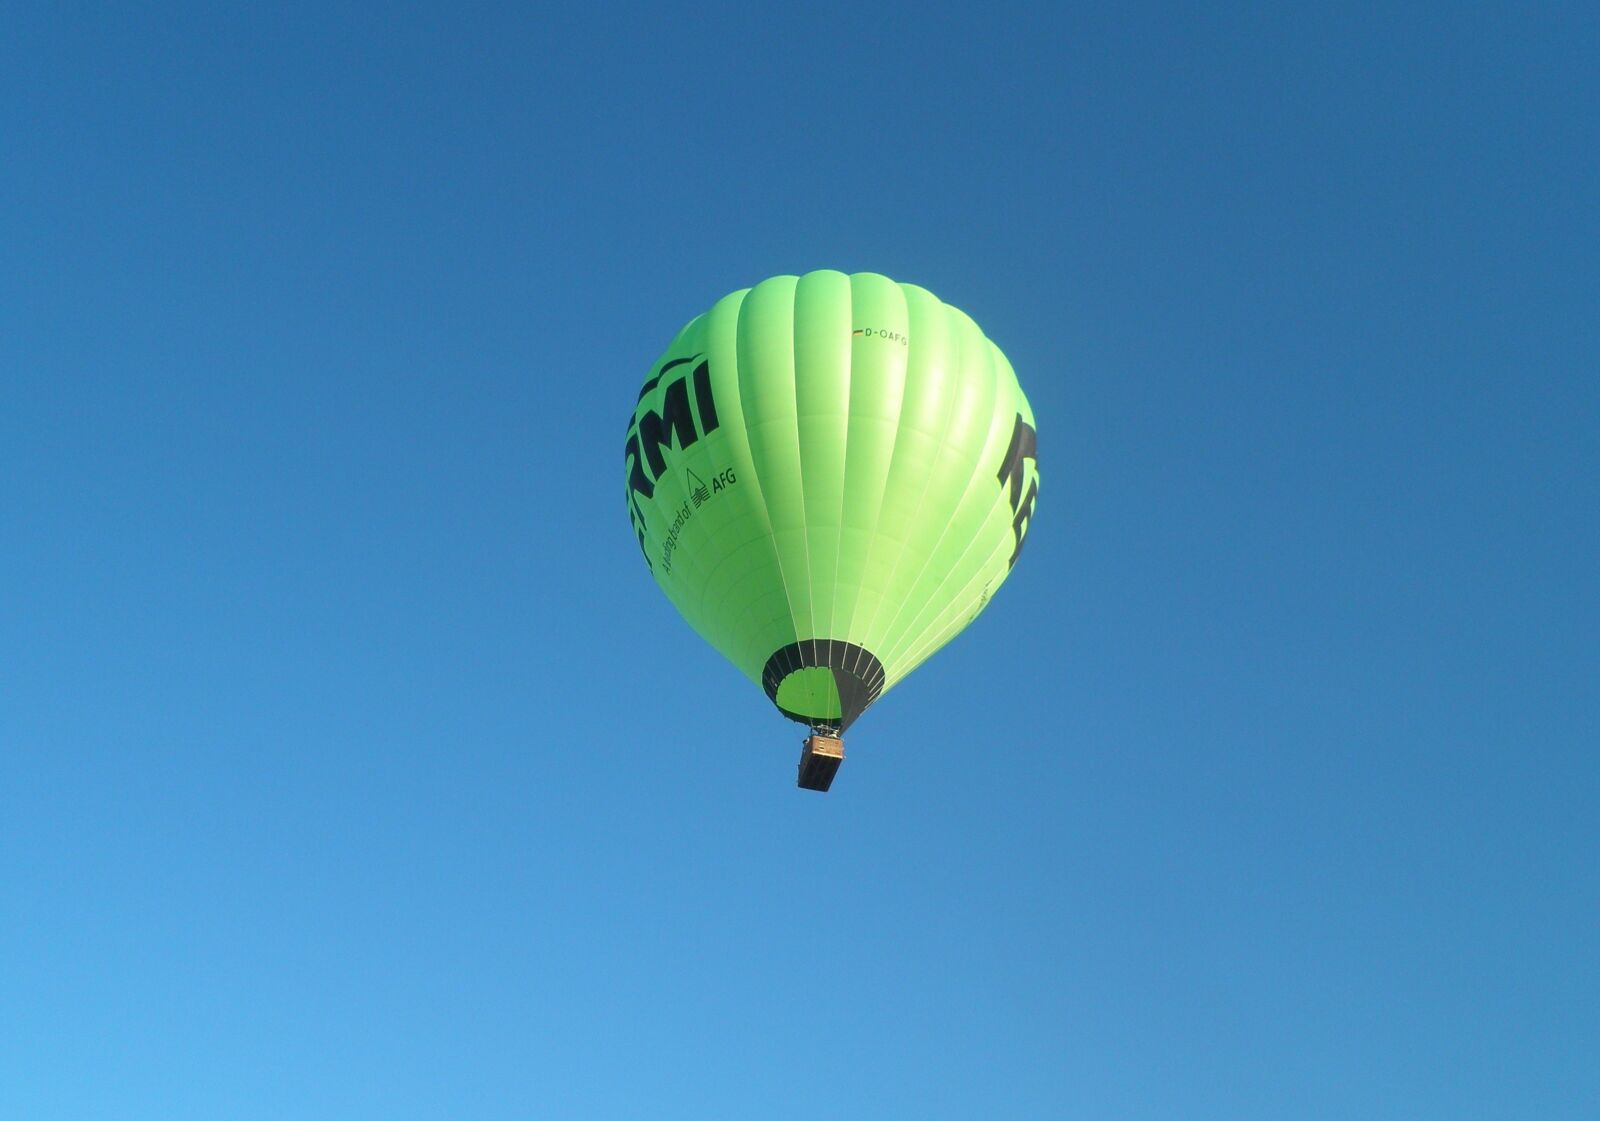 Olympus FE-5035 sample photo. Sky, balloon, air photography